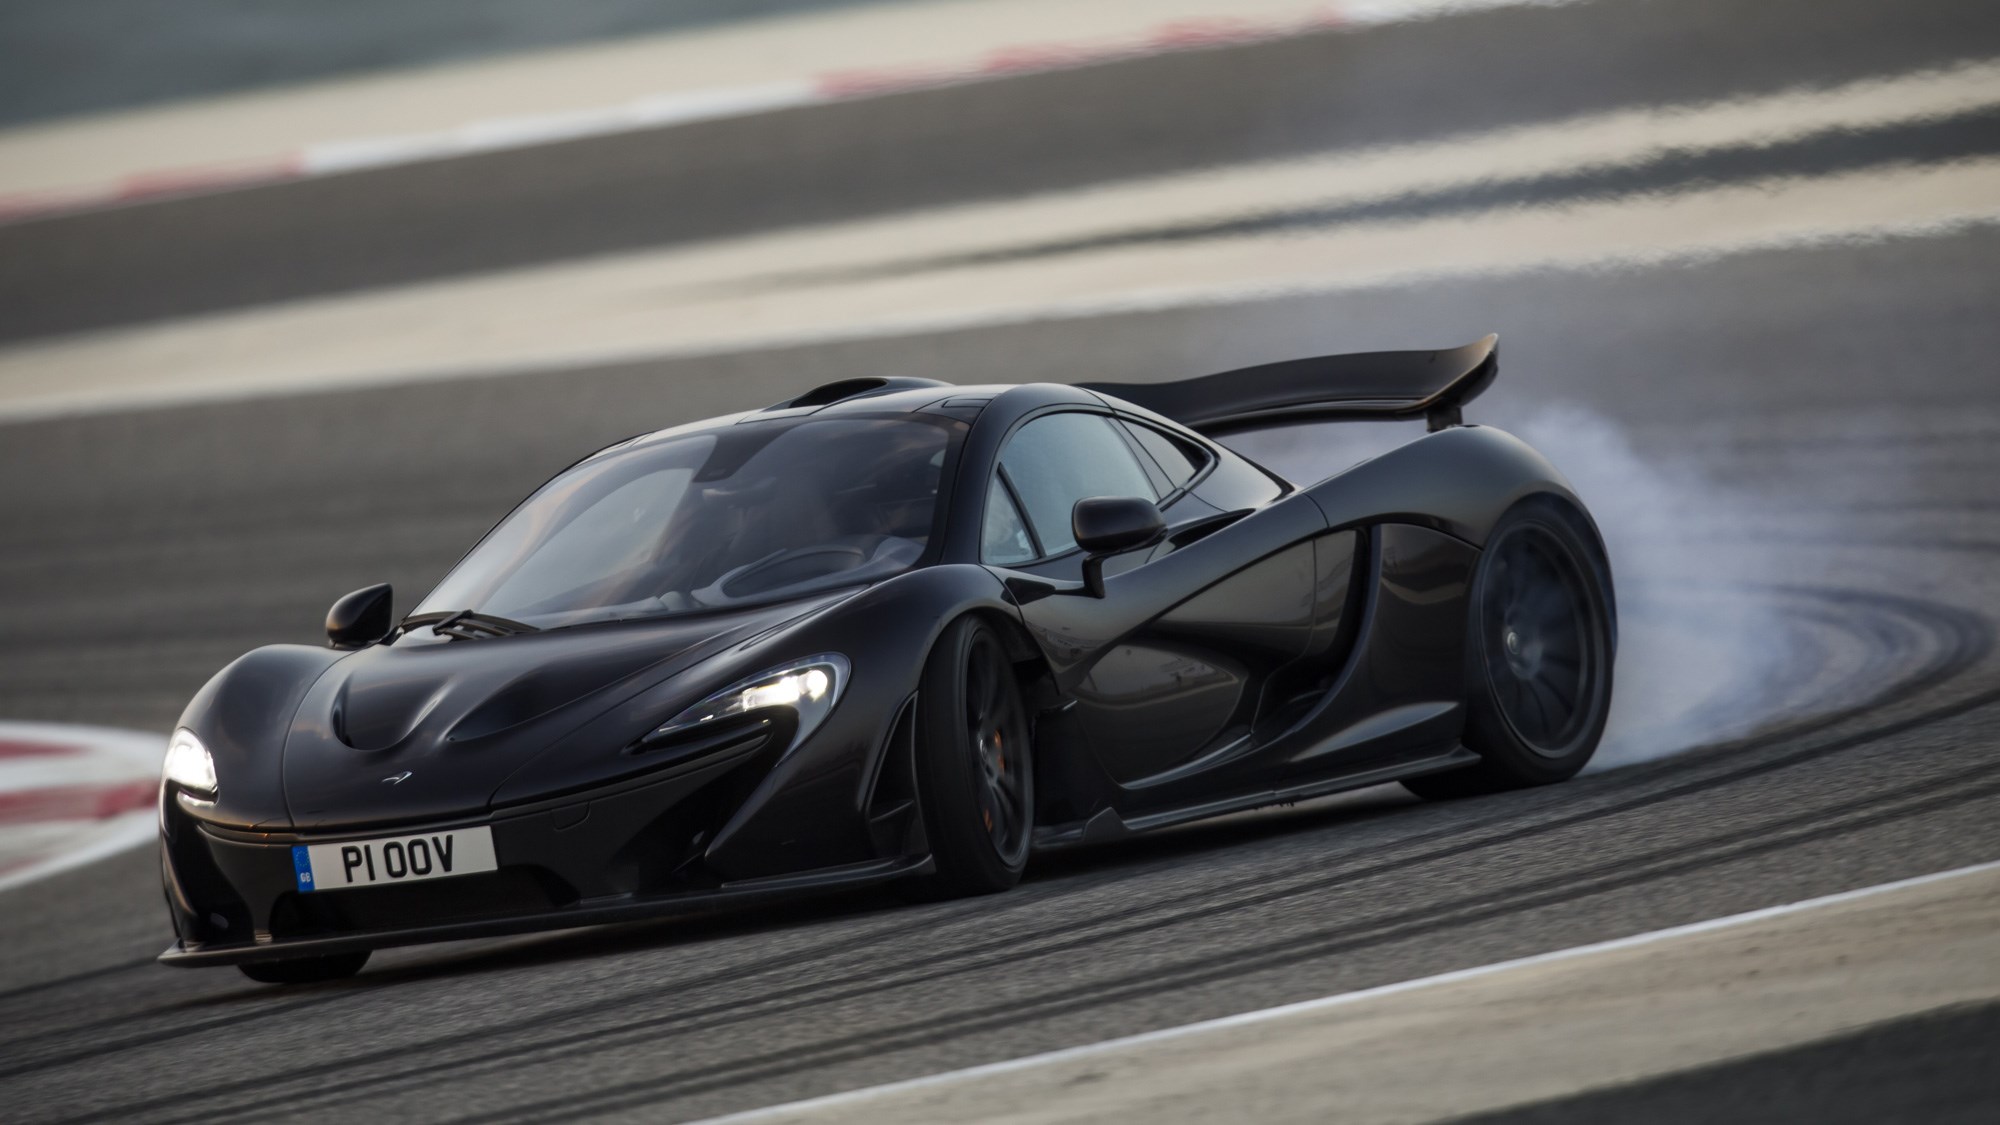 McLaren P1 review, Bahrain, black, front view, oversteer, tyres smoking